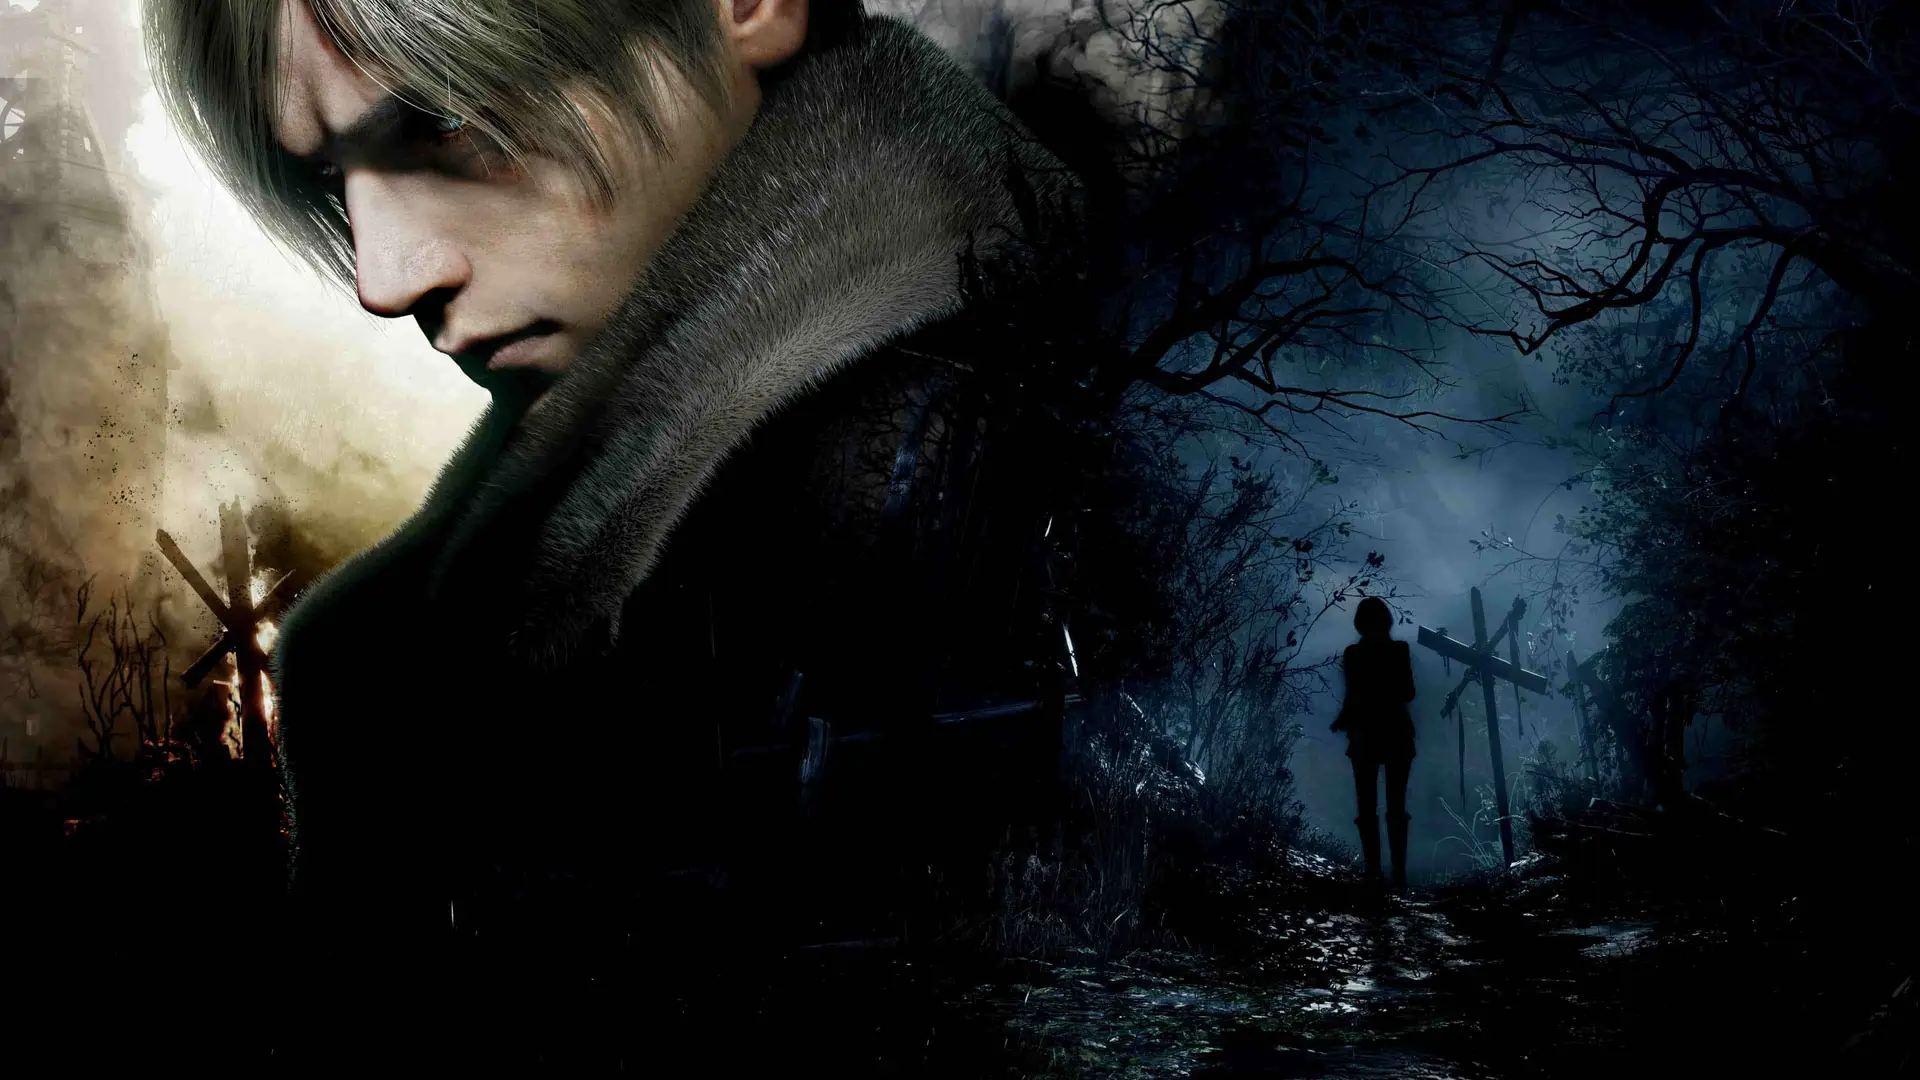 Artwork del juego Resident Evil 4 Remake con su protagonista y la silueta de una mujer en las sombras de la noche